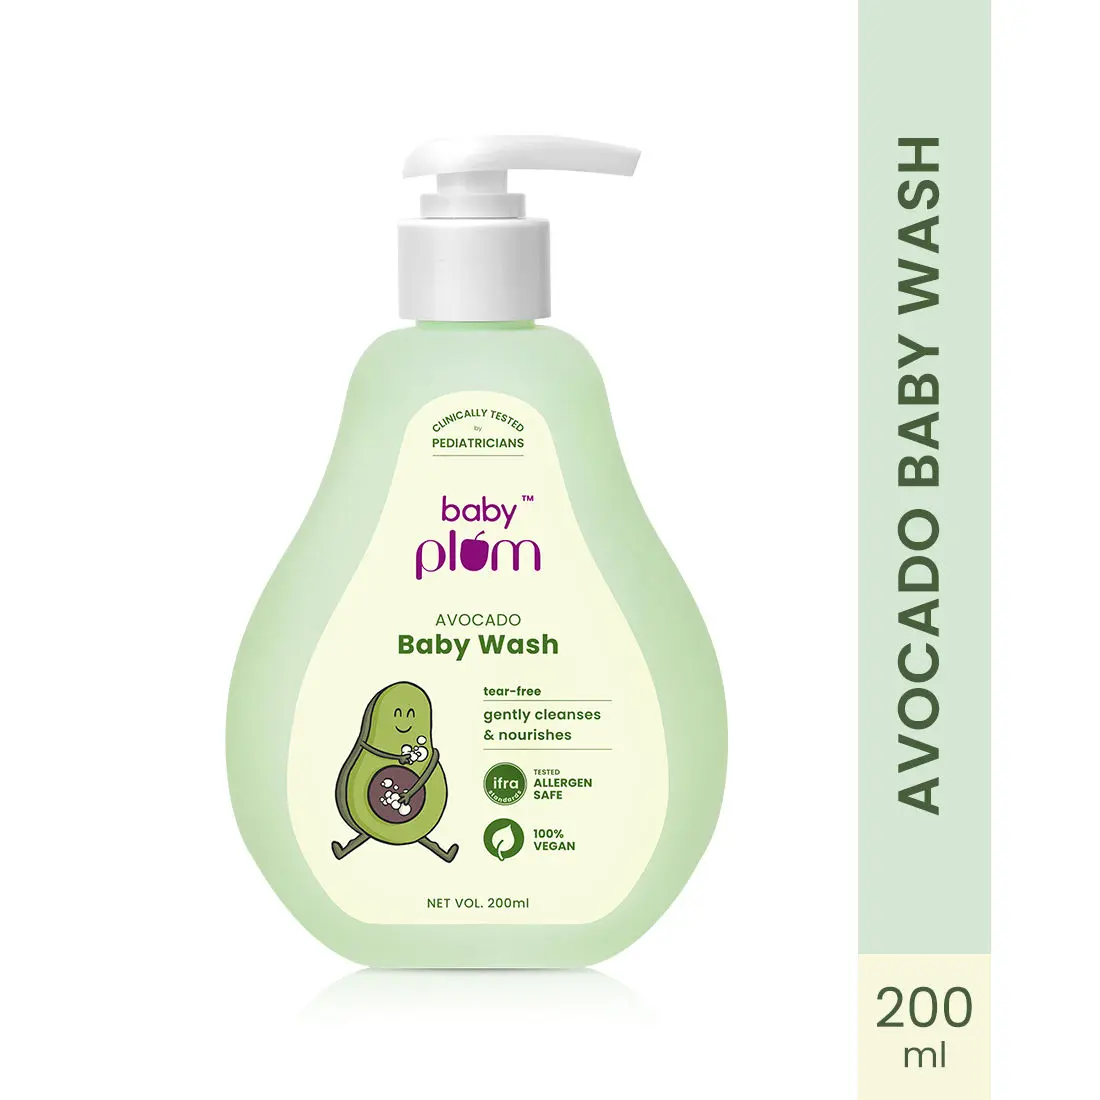 Baby Plum Avocado Baby Wash 200 ml